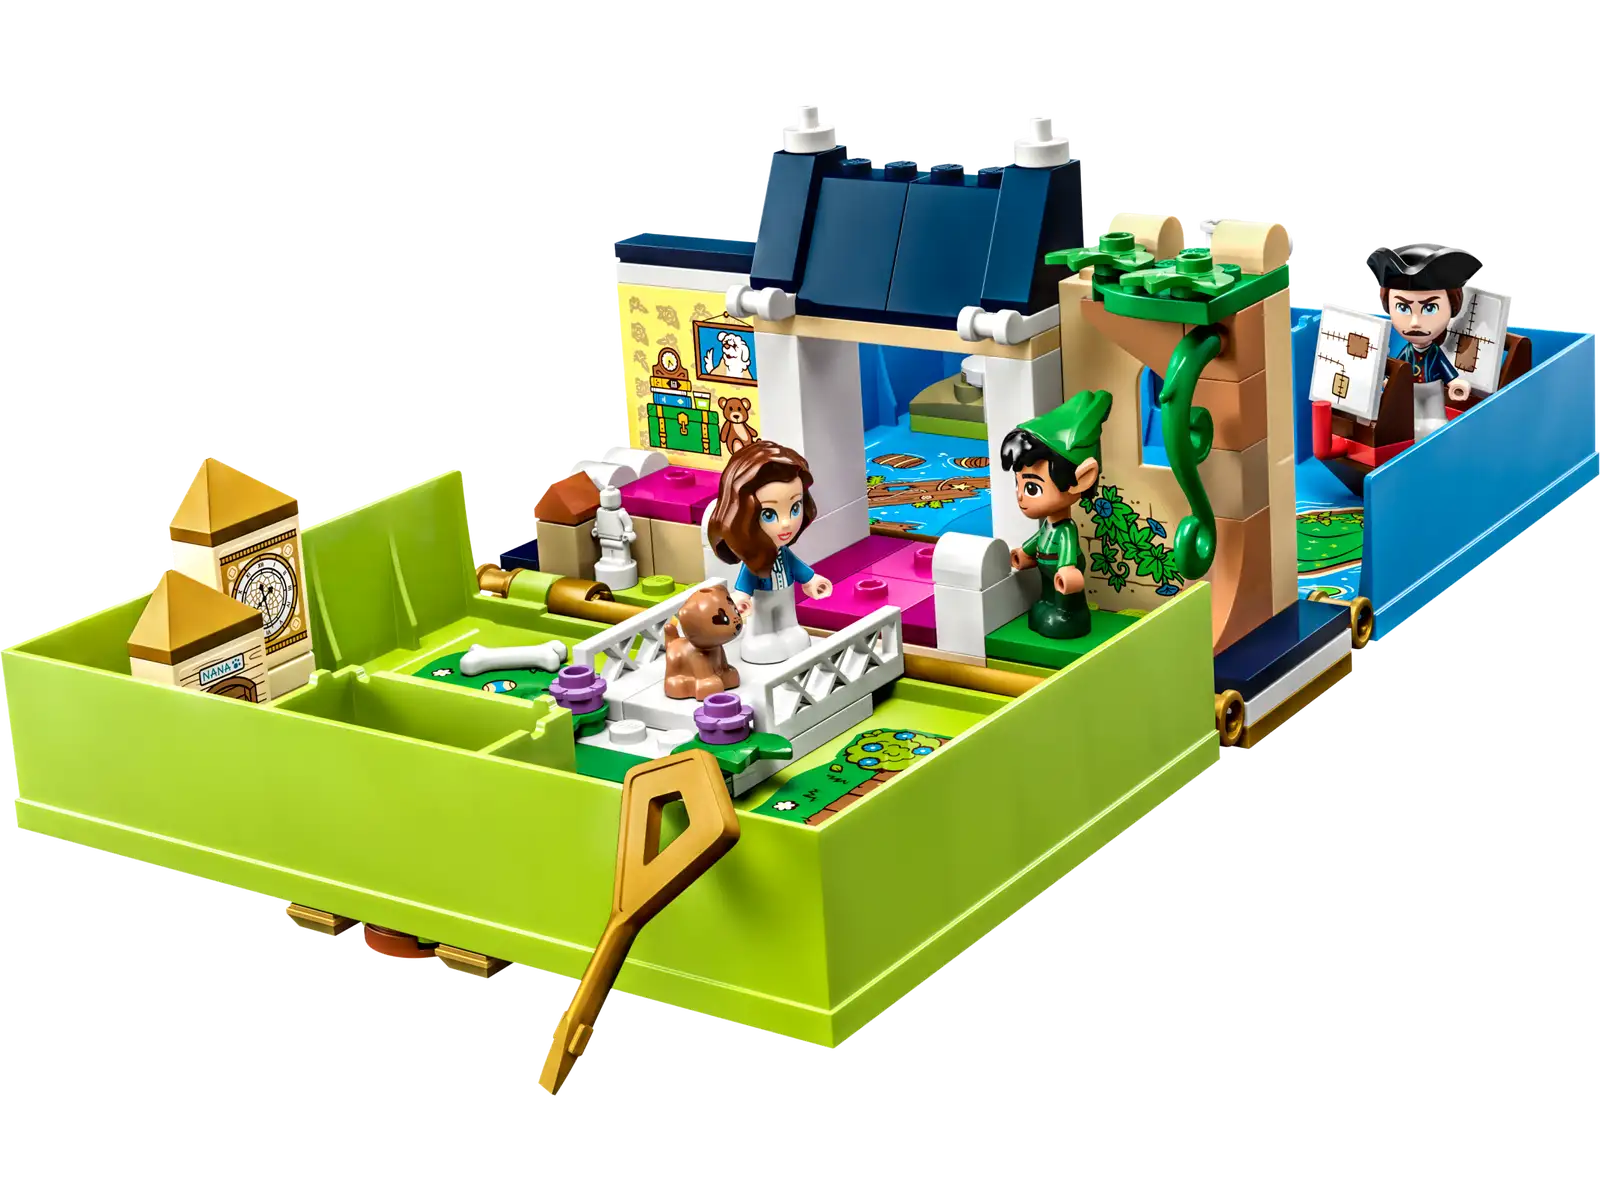 LEGO Peter Pan & Wendy's Storybook Adventure